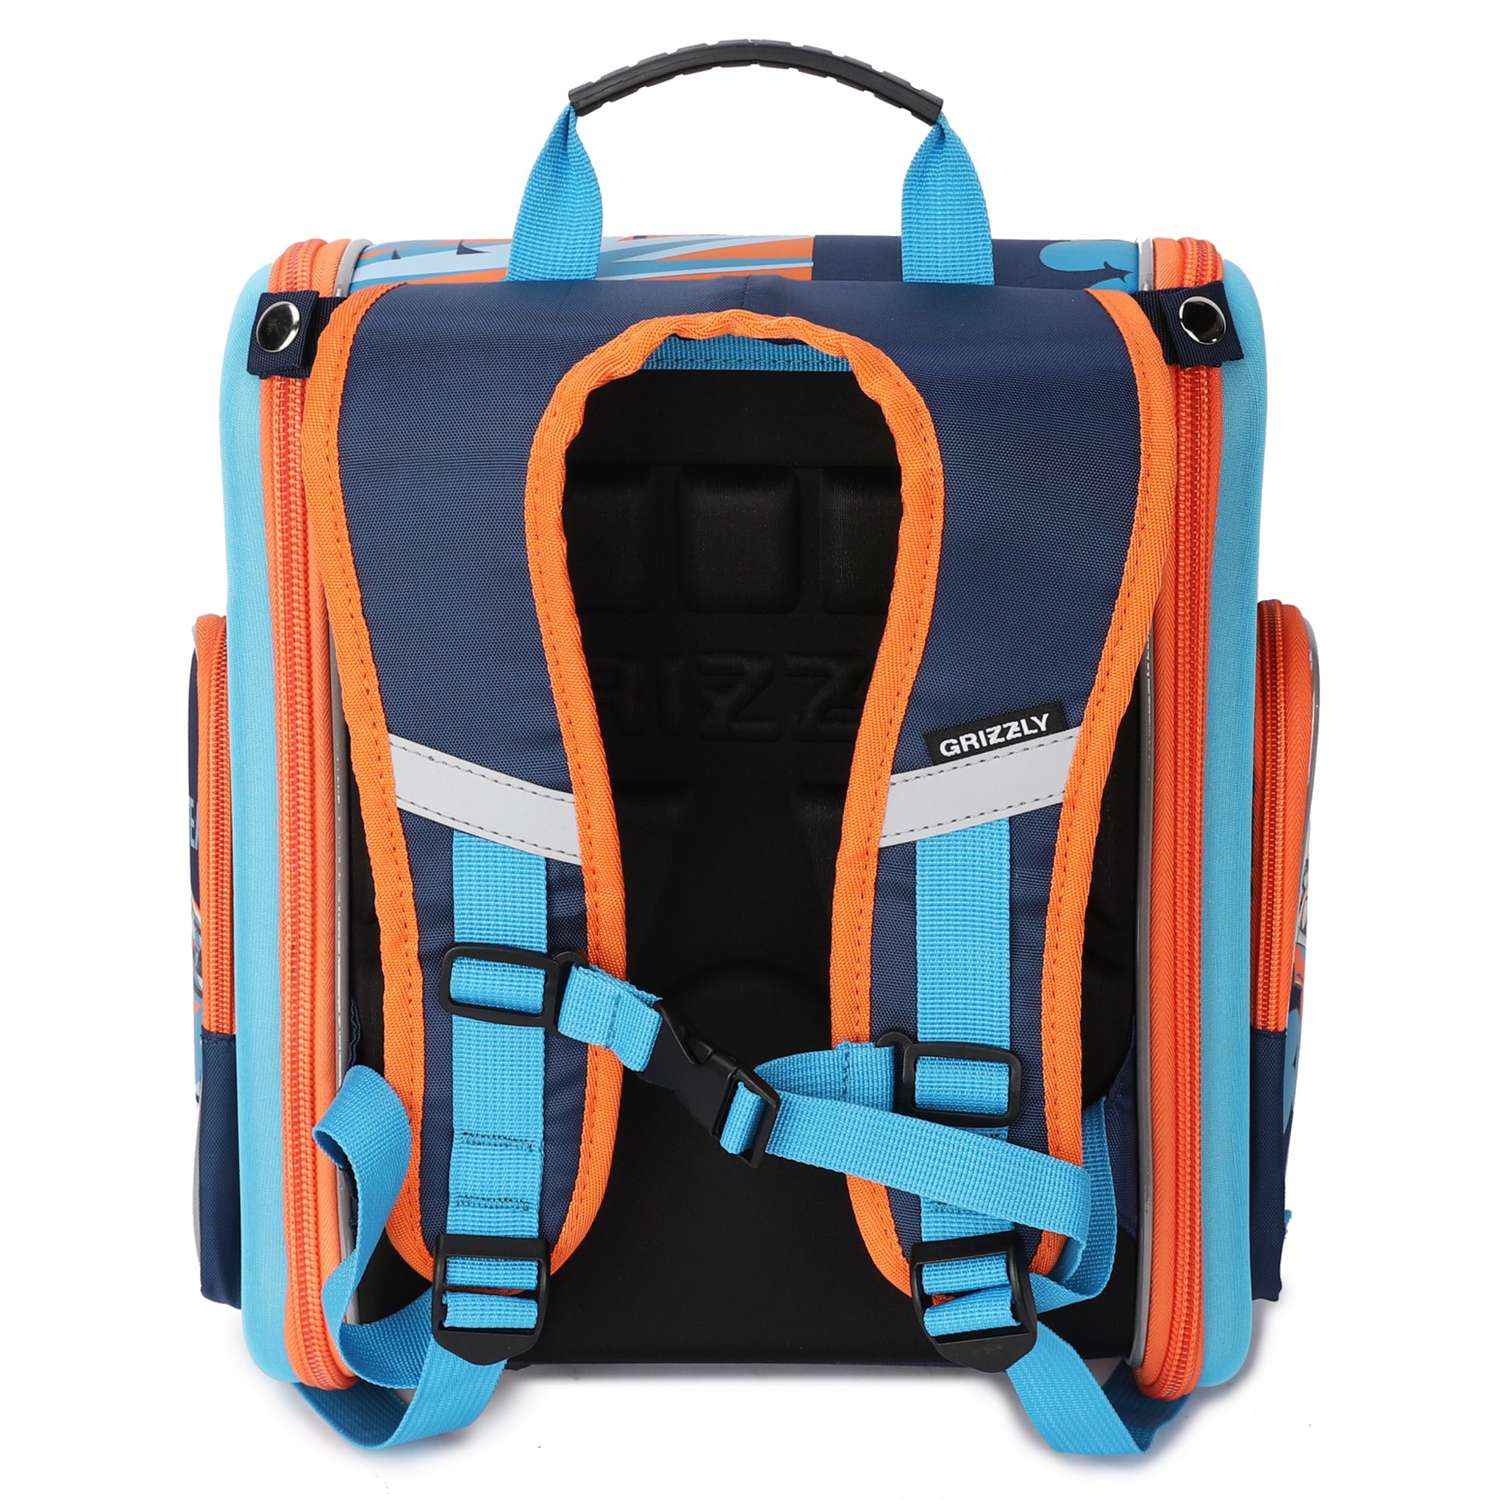 Рюкзак школьный Grizzly Авто Темно-синий-Голубой RA-970-3/1 - фото 3